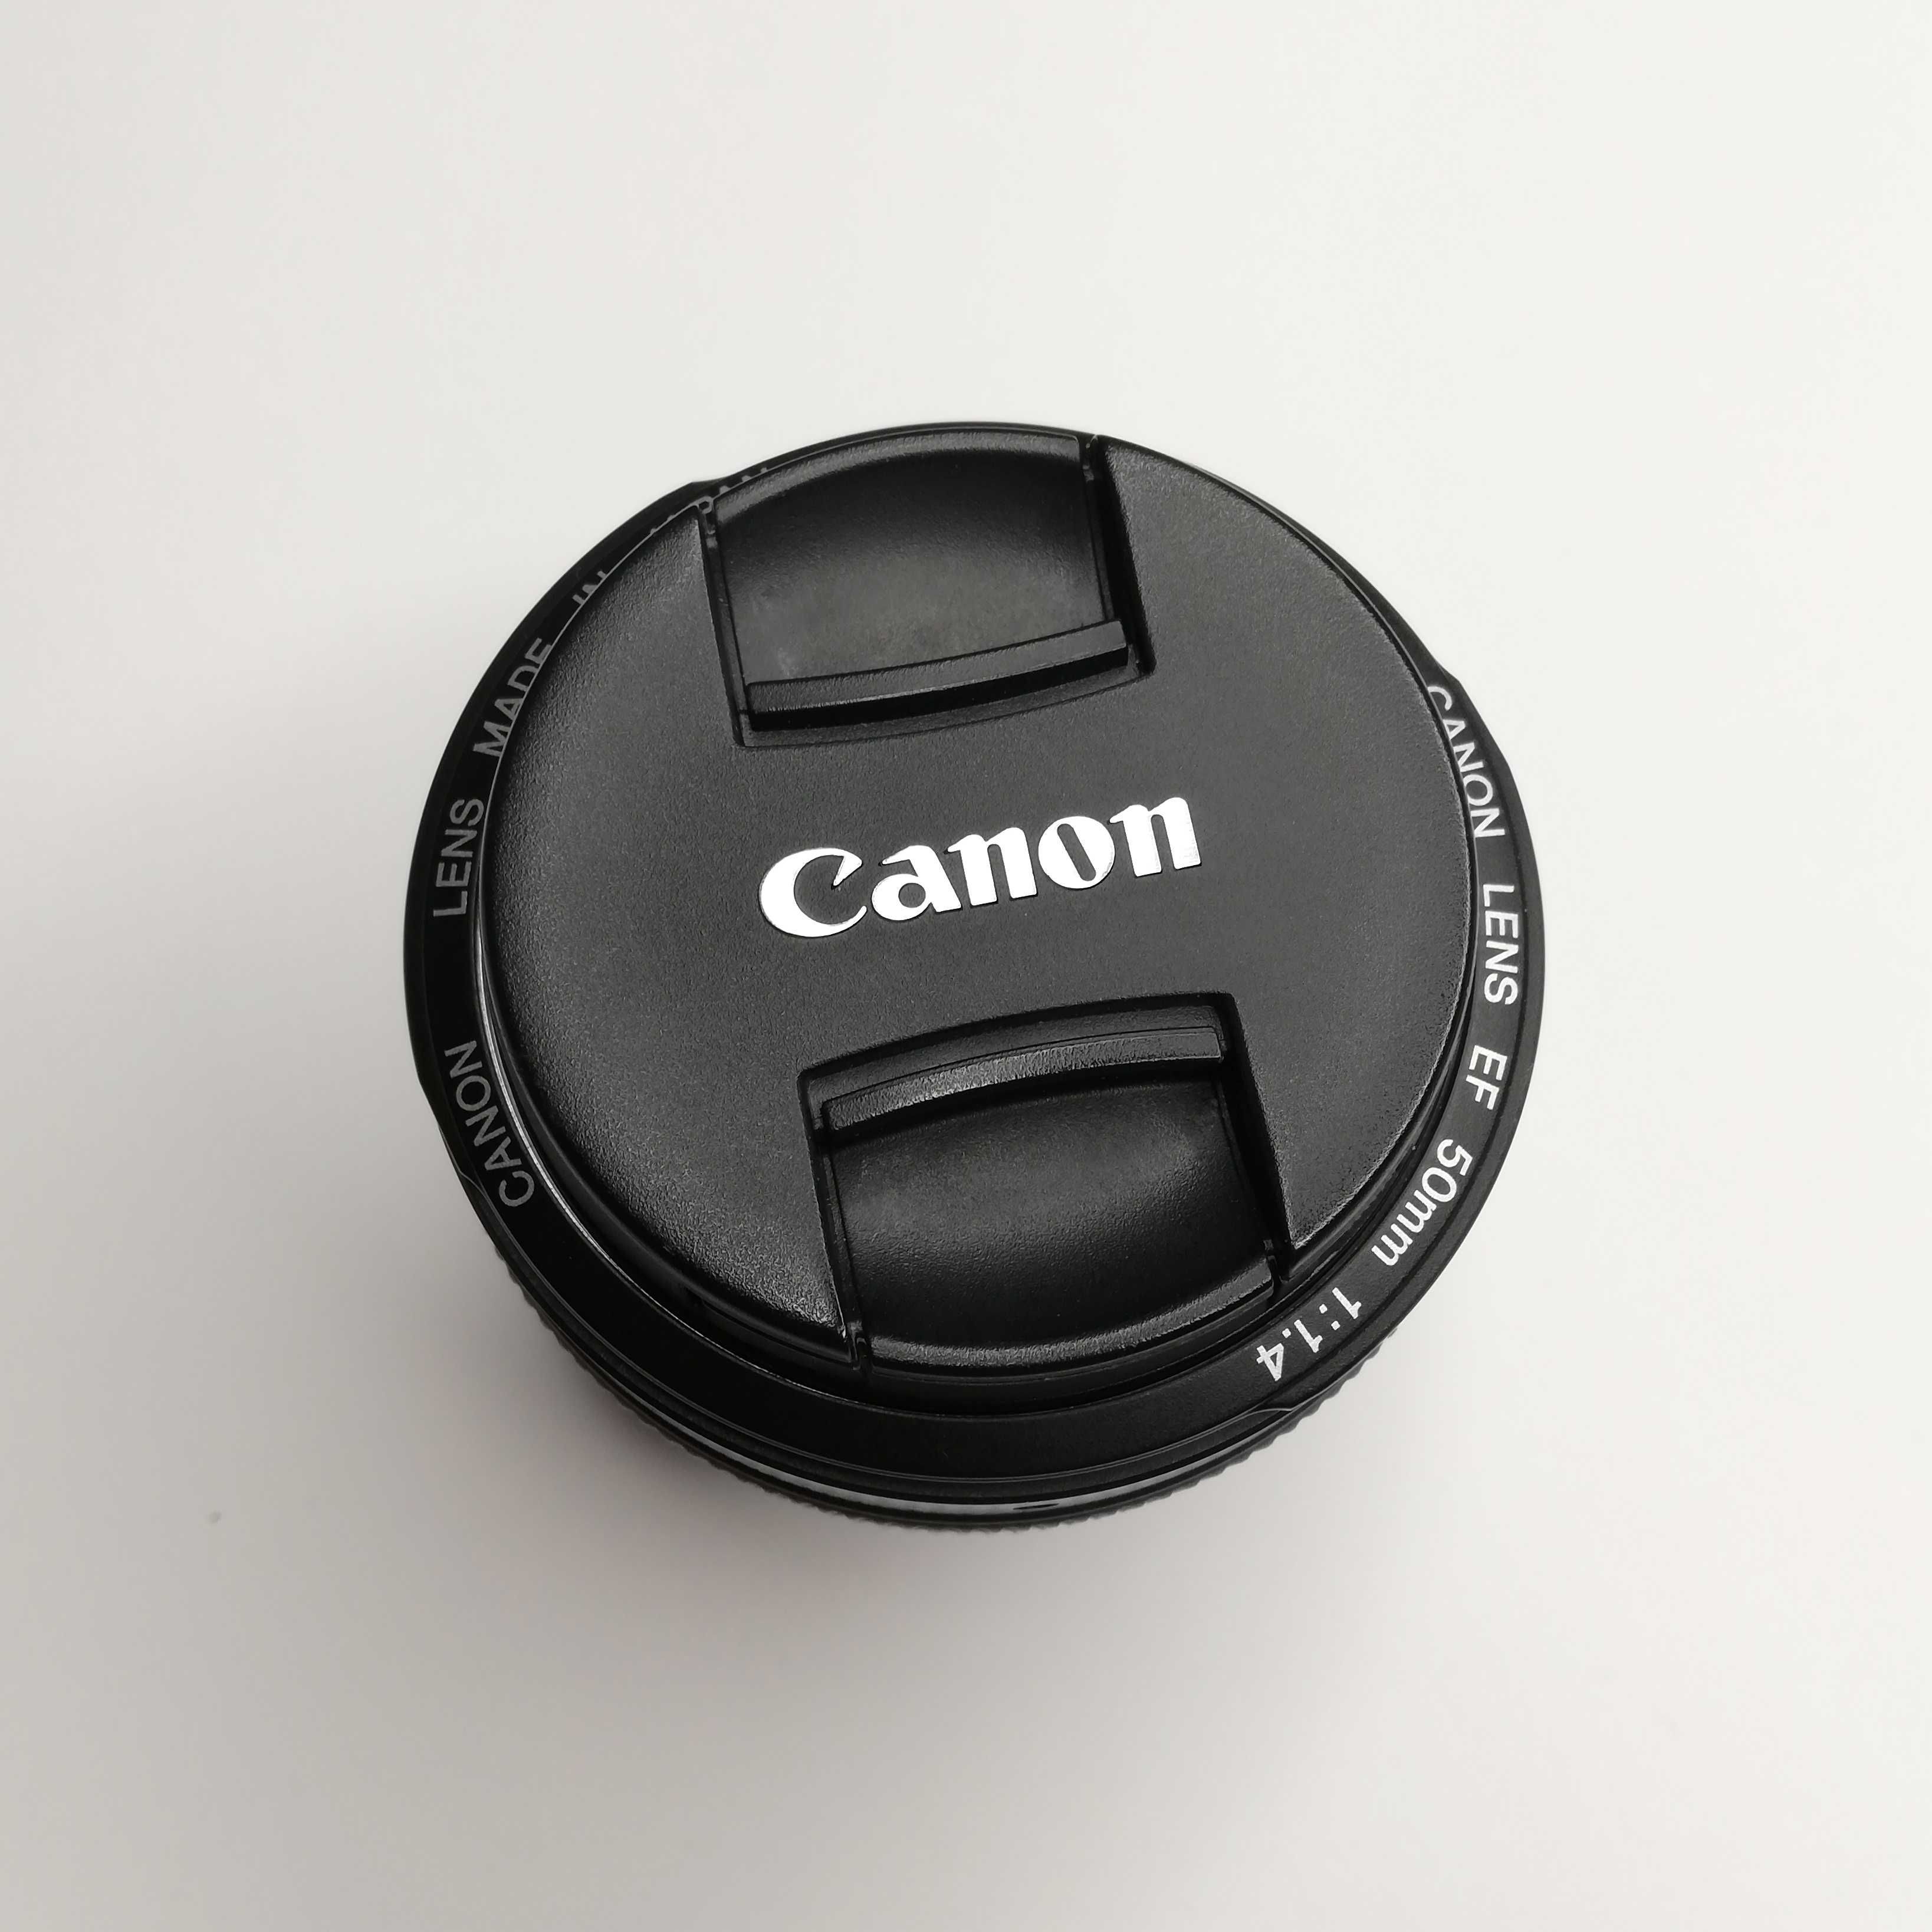 Canon EF 50mm f/1.4 USM, состояние нового, не пользованный почти